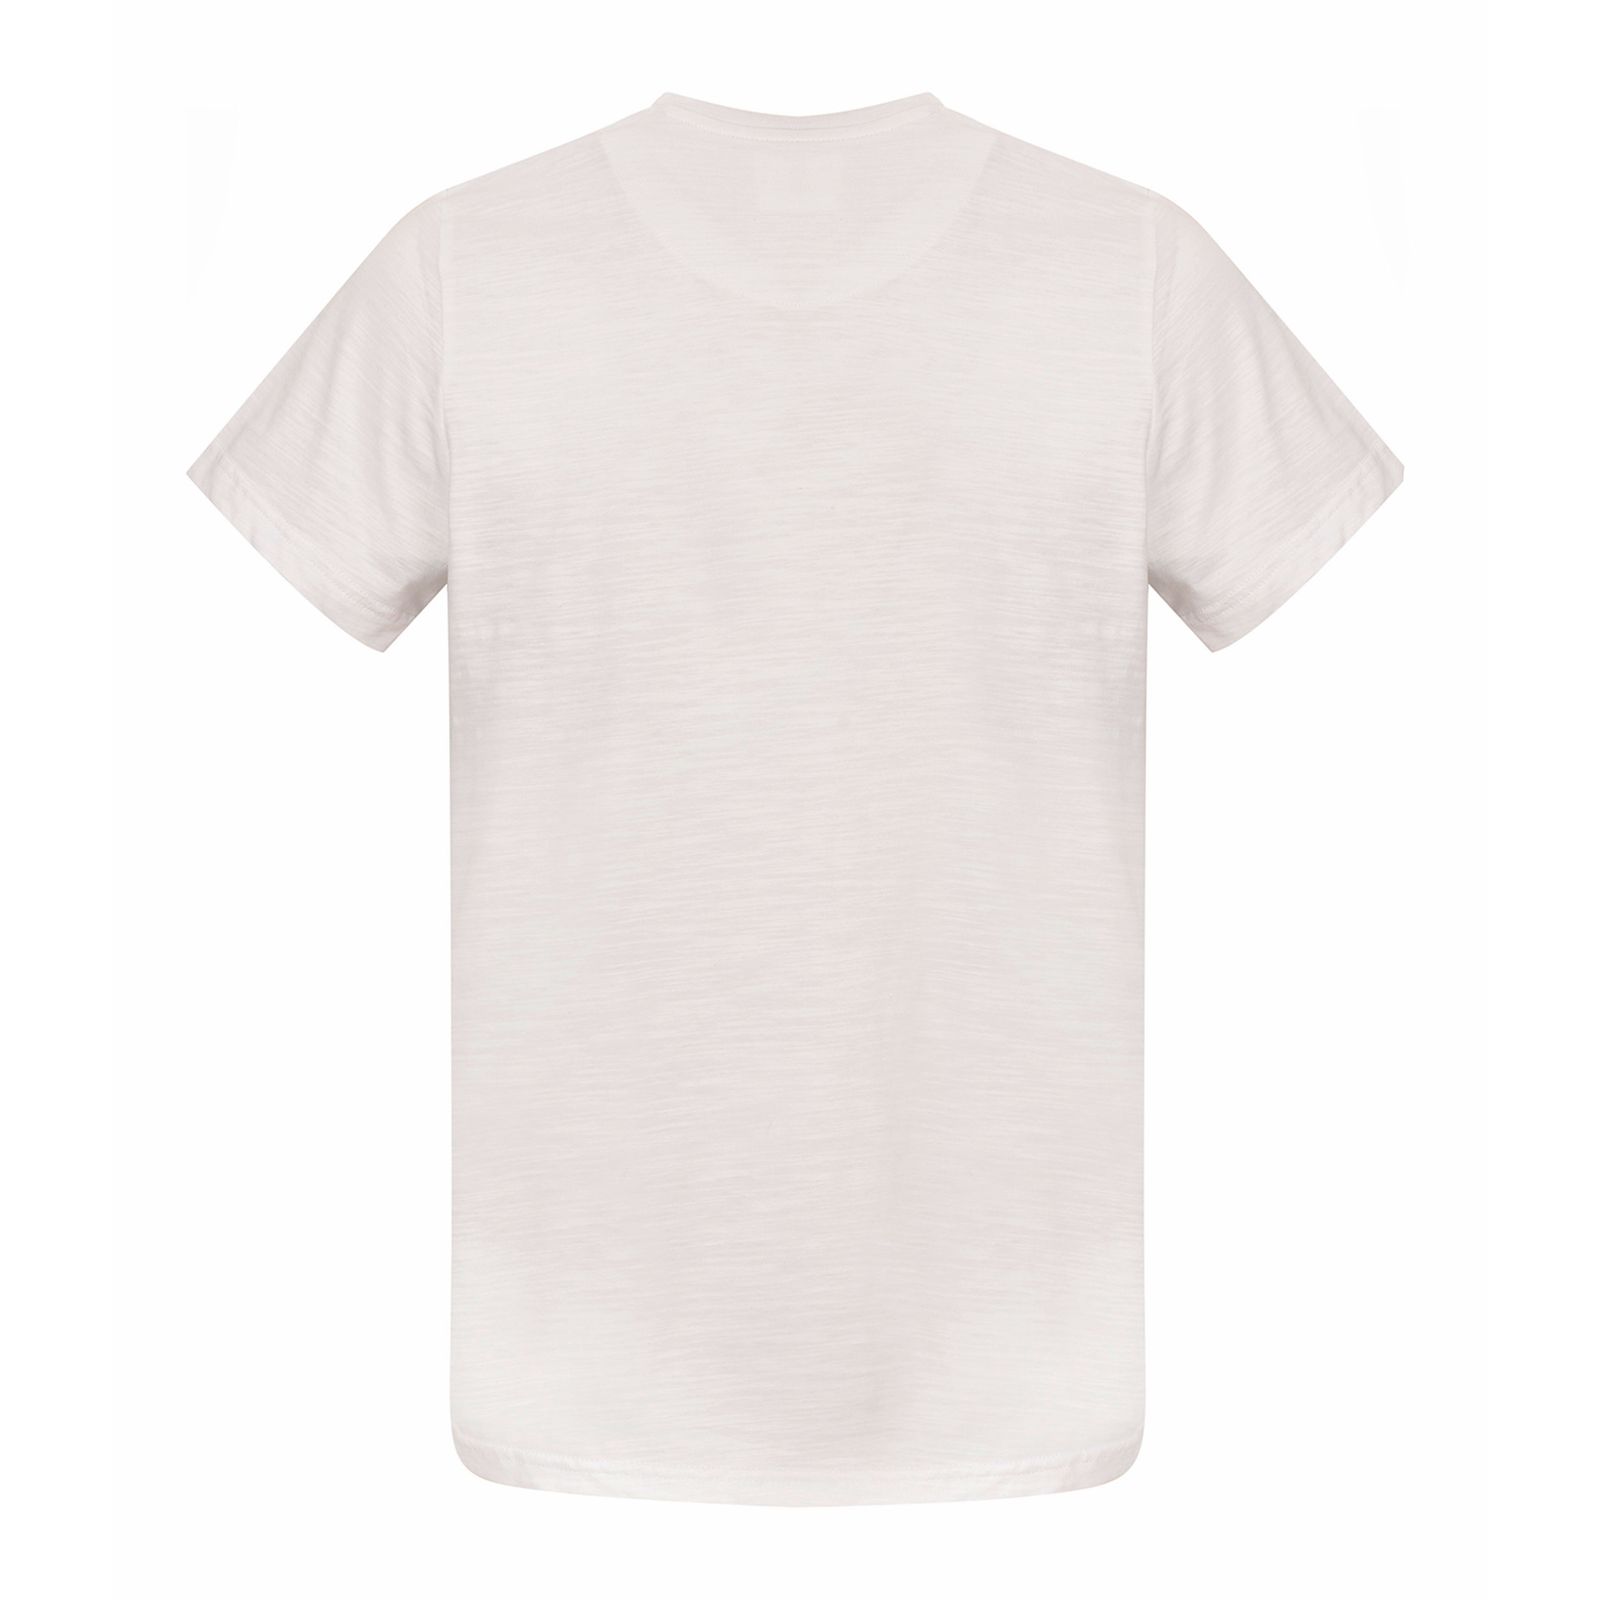 تی شرت آستین کوتاه مردانه بادی اسپینر مدل 3438 کد 1 رنگ سفید -  - 2